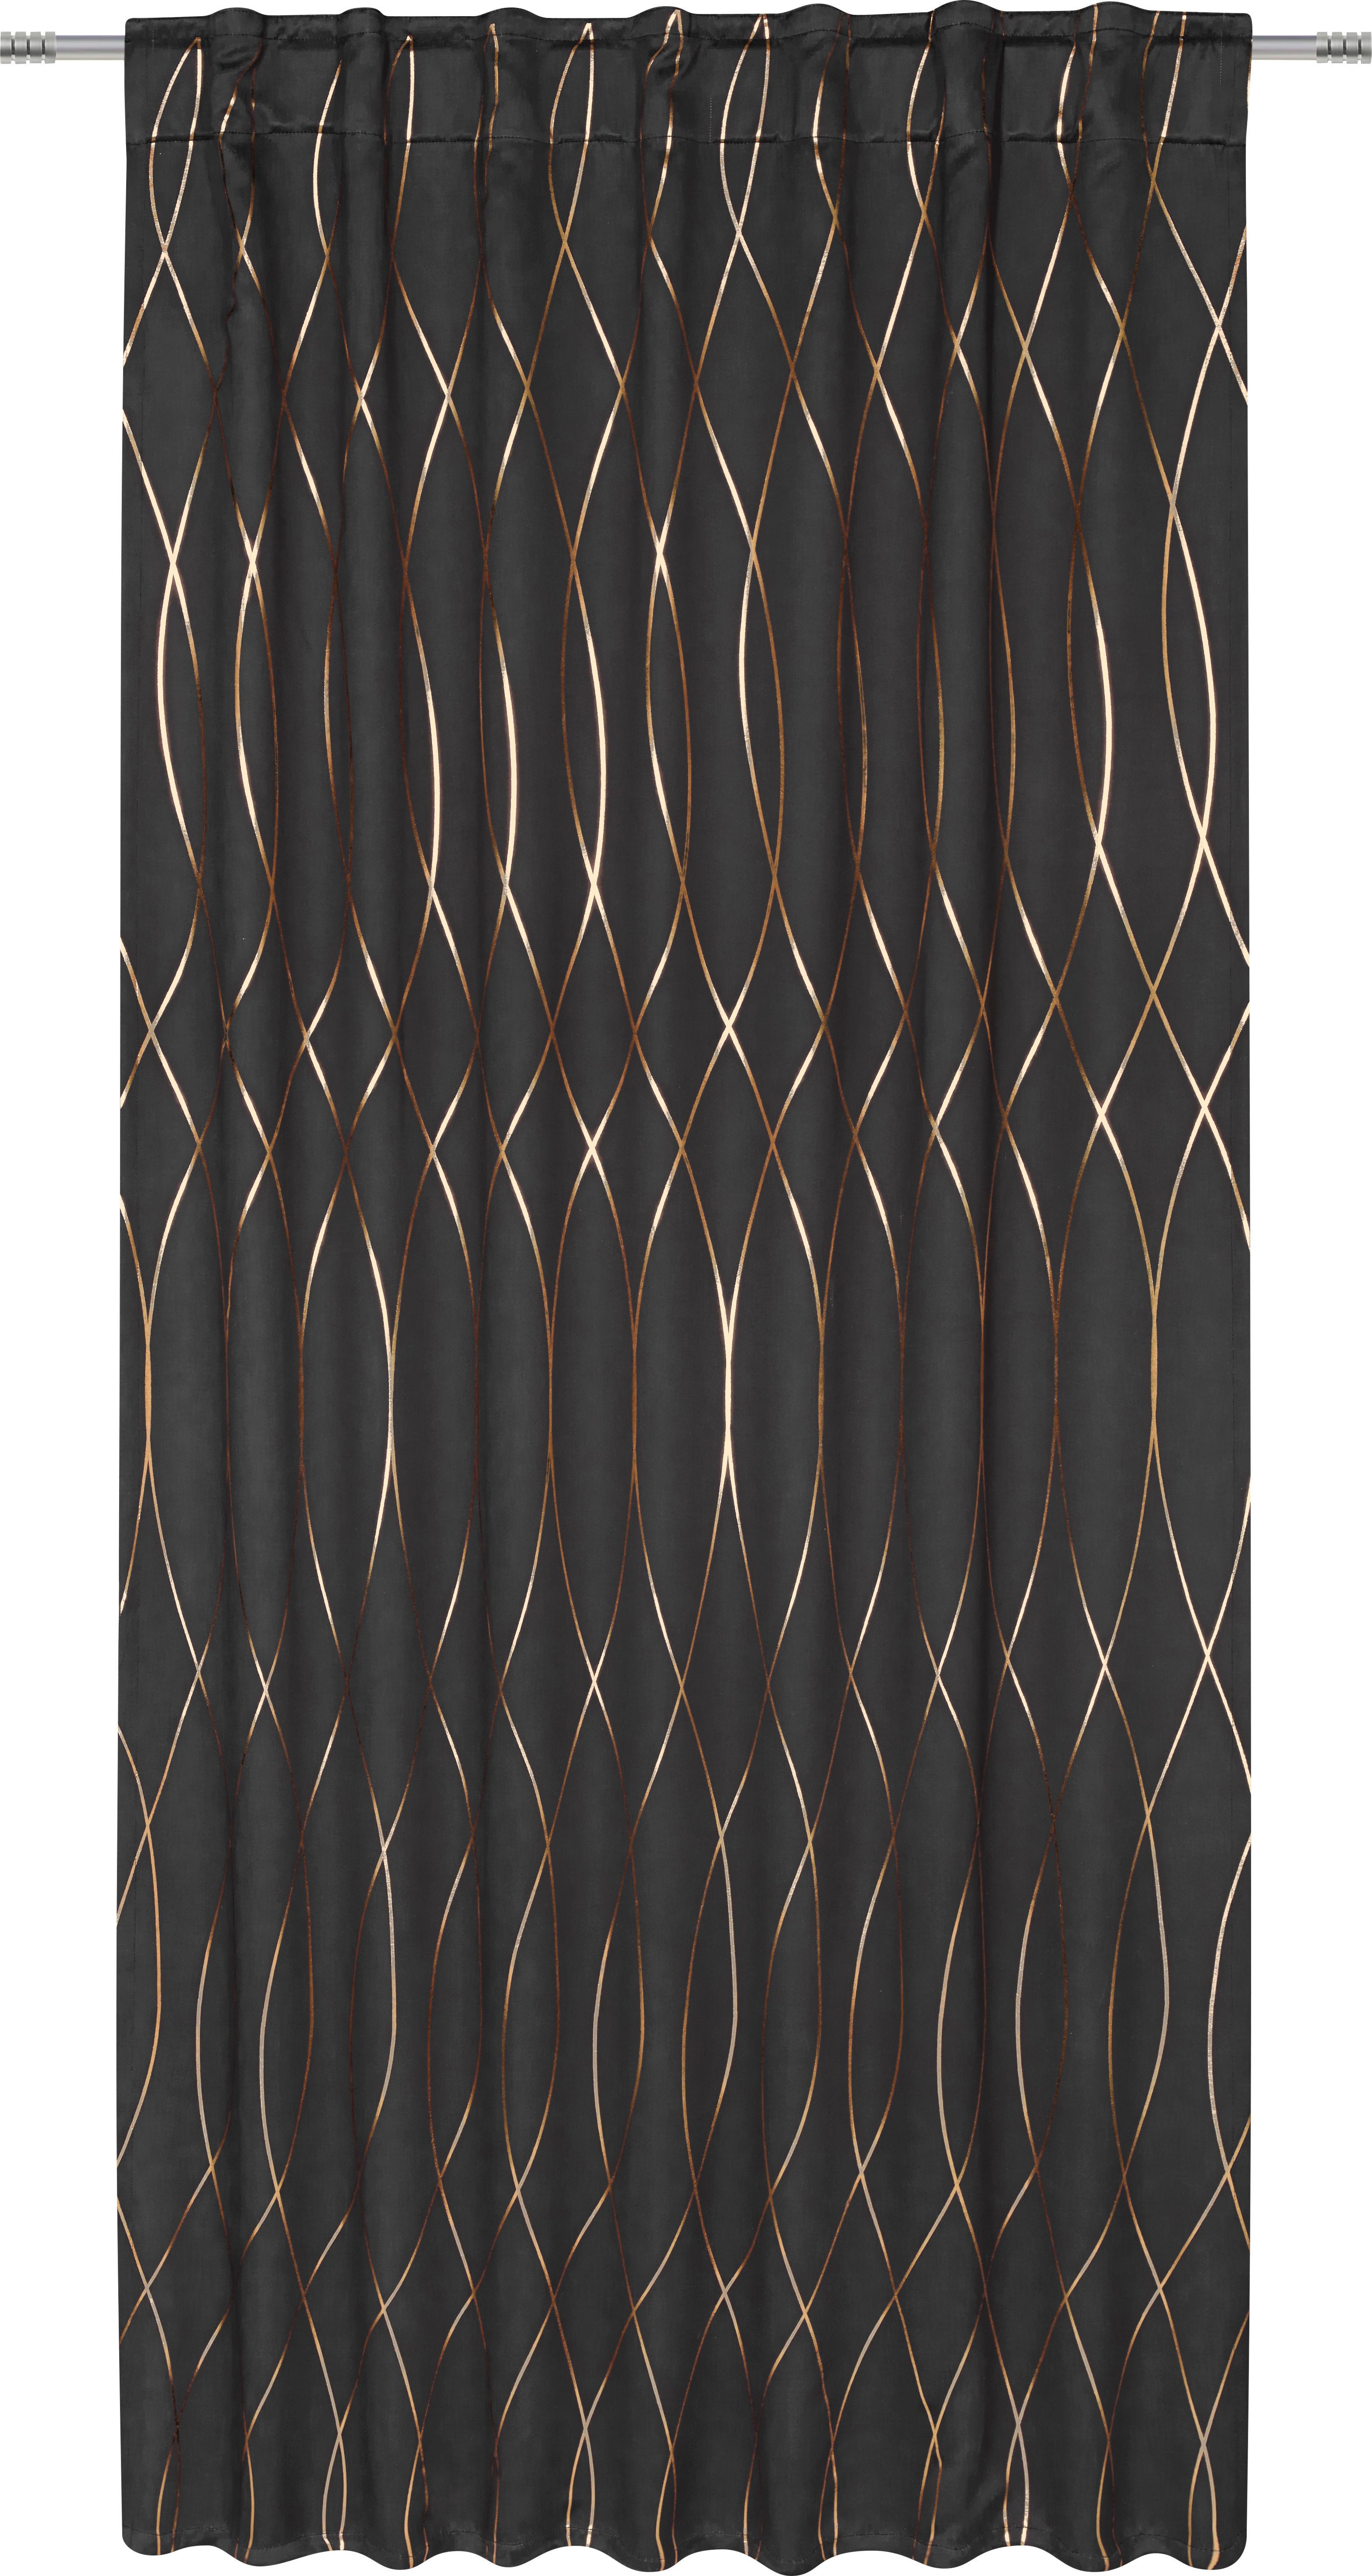 Zatemňovací Závěs Glamour, 140/245 Cm - měděné barvy/černá, Lifestyle, textil (140/245cm) - Modern Living